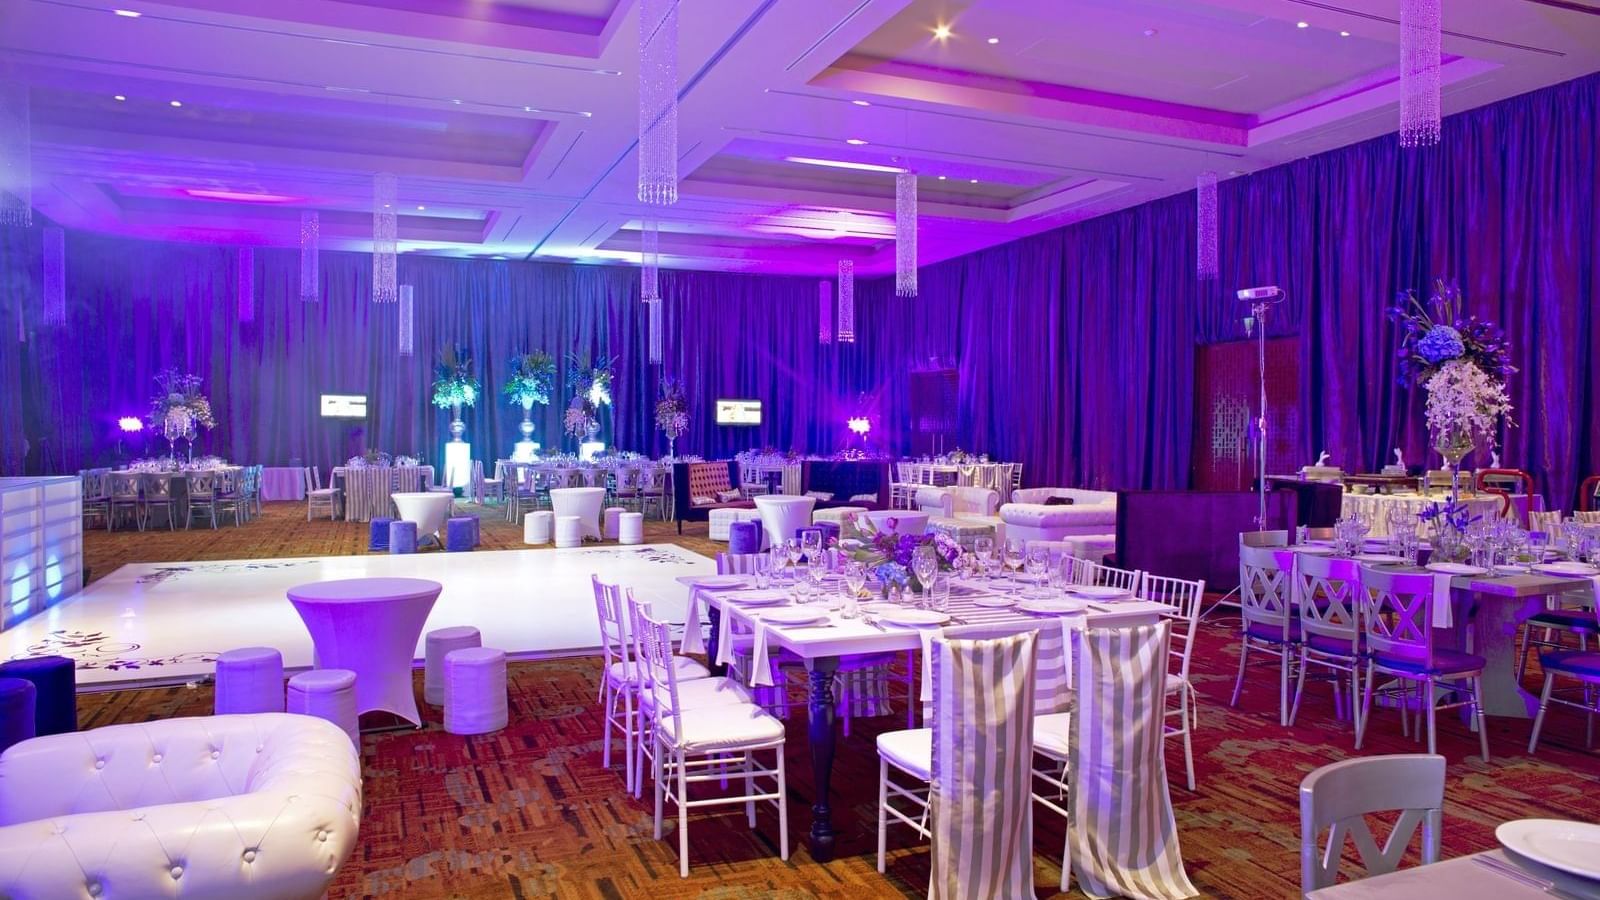 The Aqua Great Room for events at Live Aqua Resorts